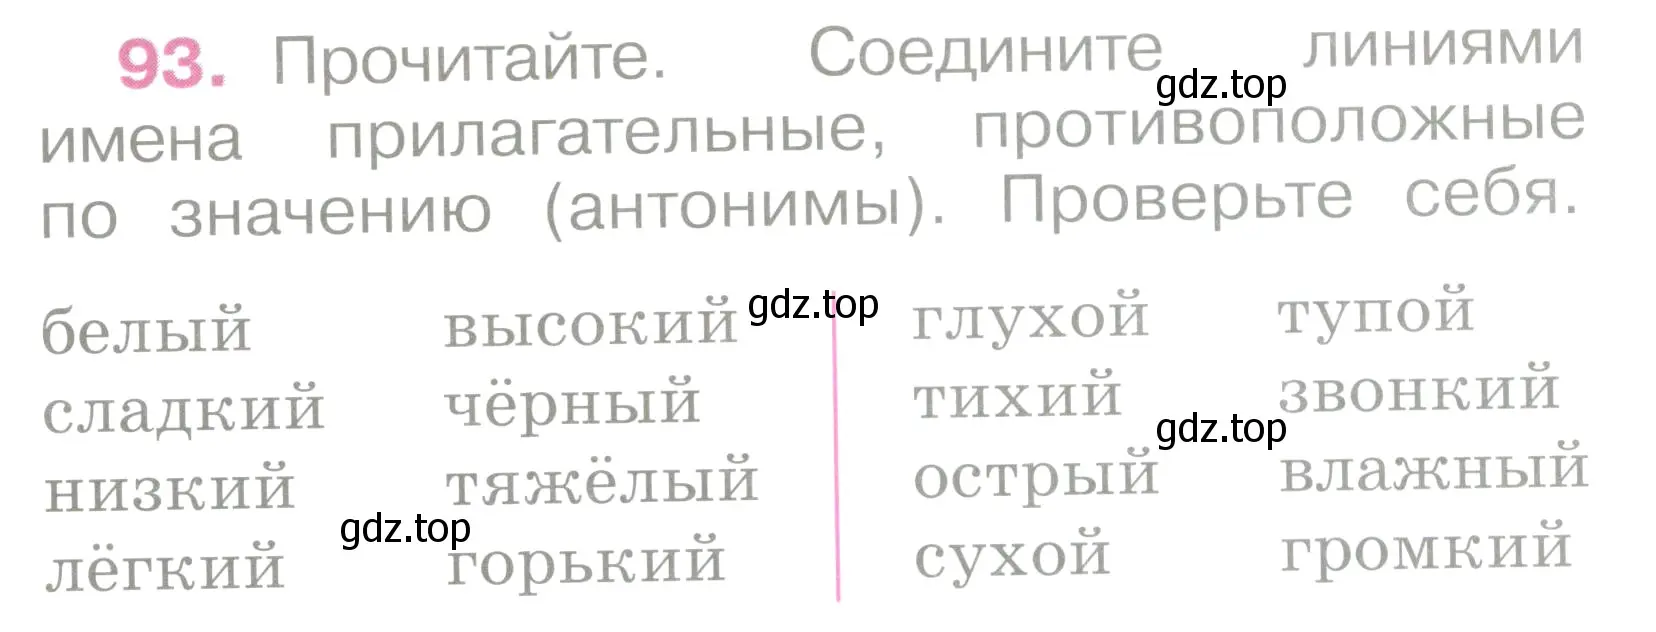 Условие номер 93 (страница 44) гдз по русскому языку 2 класс Канакина, рабочая тетрадь 2 часть